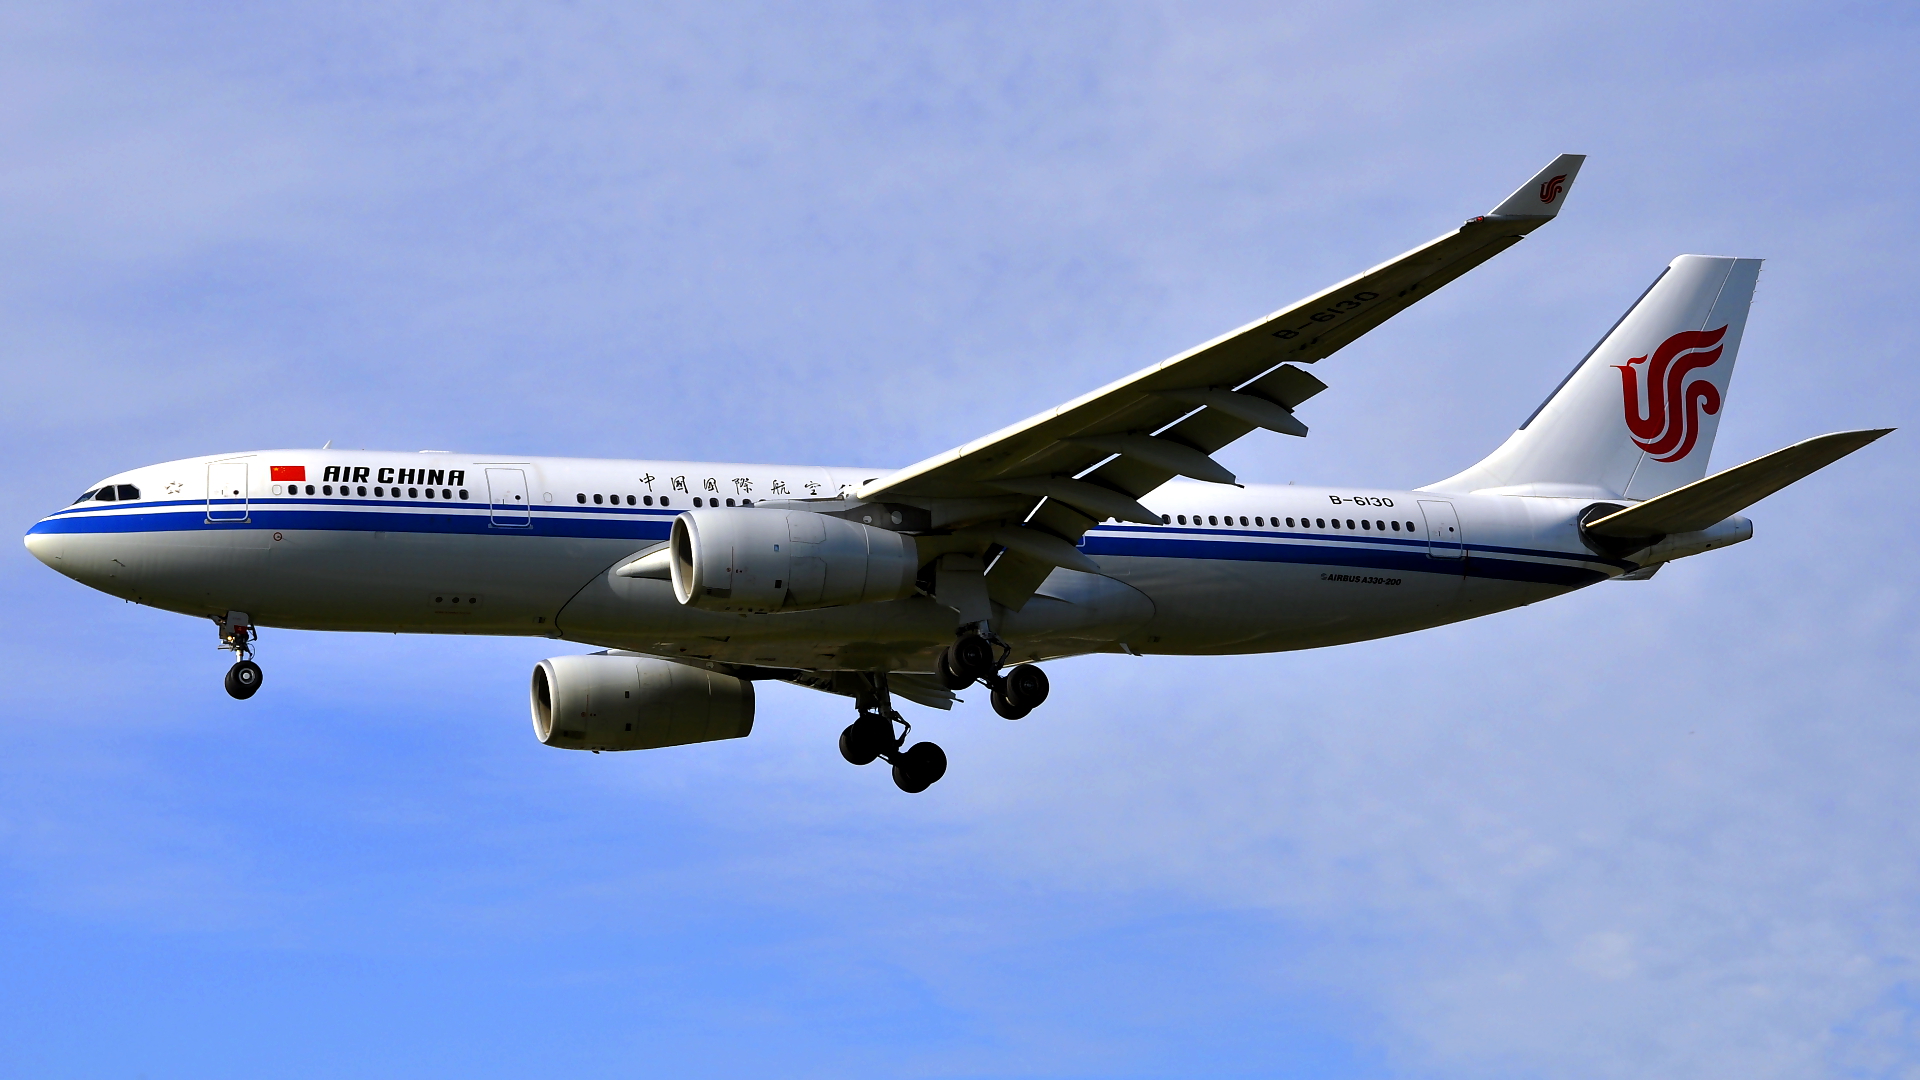 B-6130 ✈ Air China Airbus 330-243 @ London-Heathrow